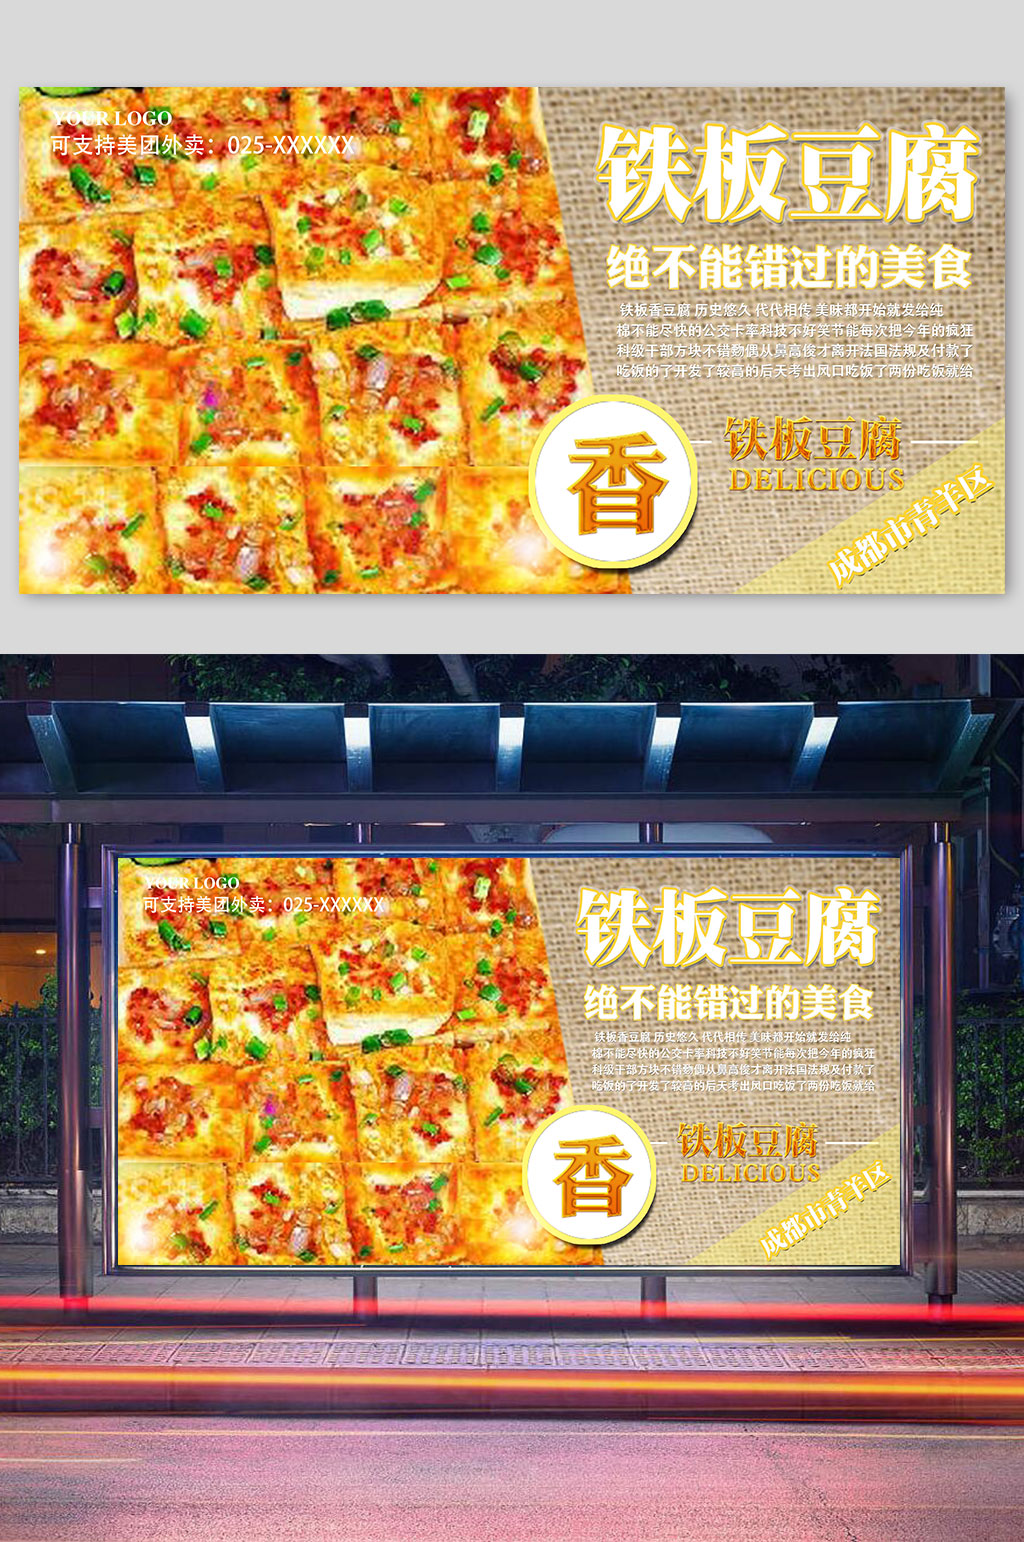 铁板豆腐广告图片大全图片